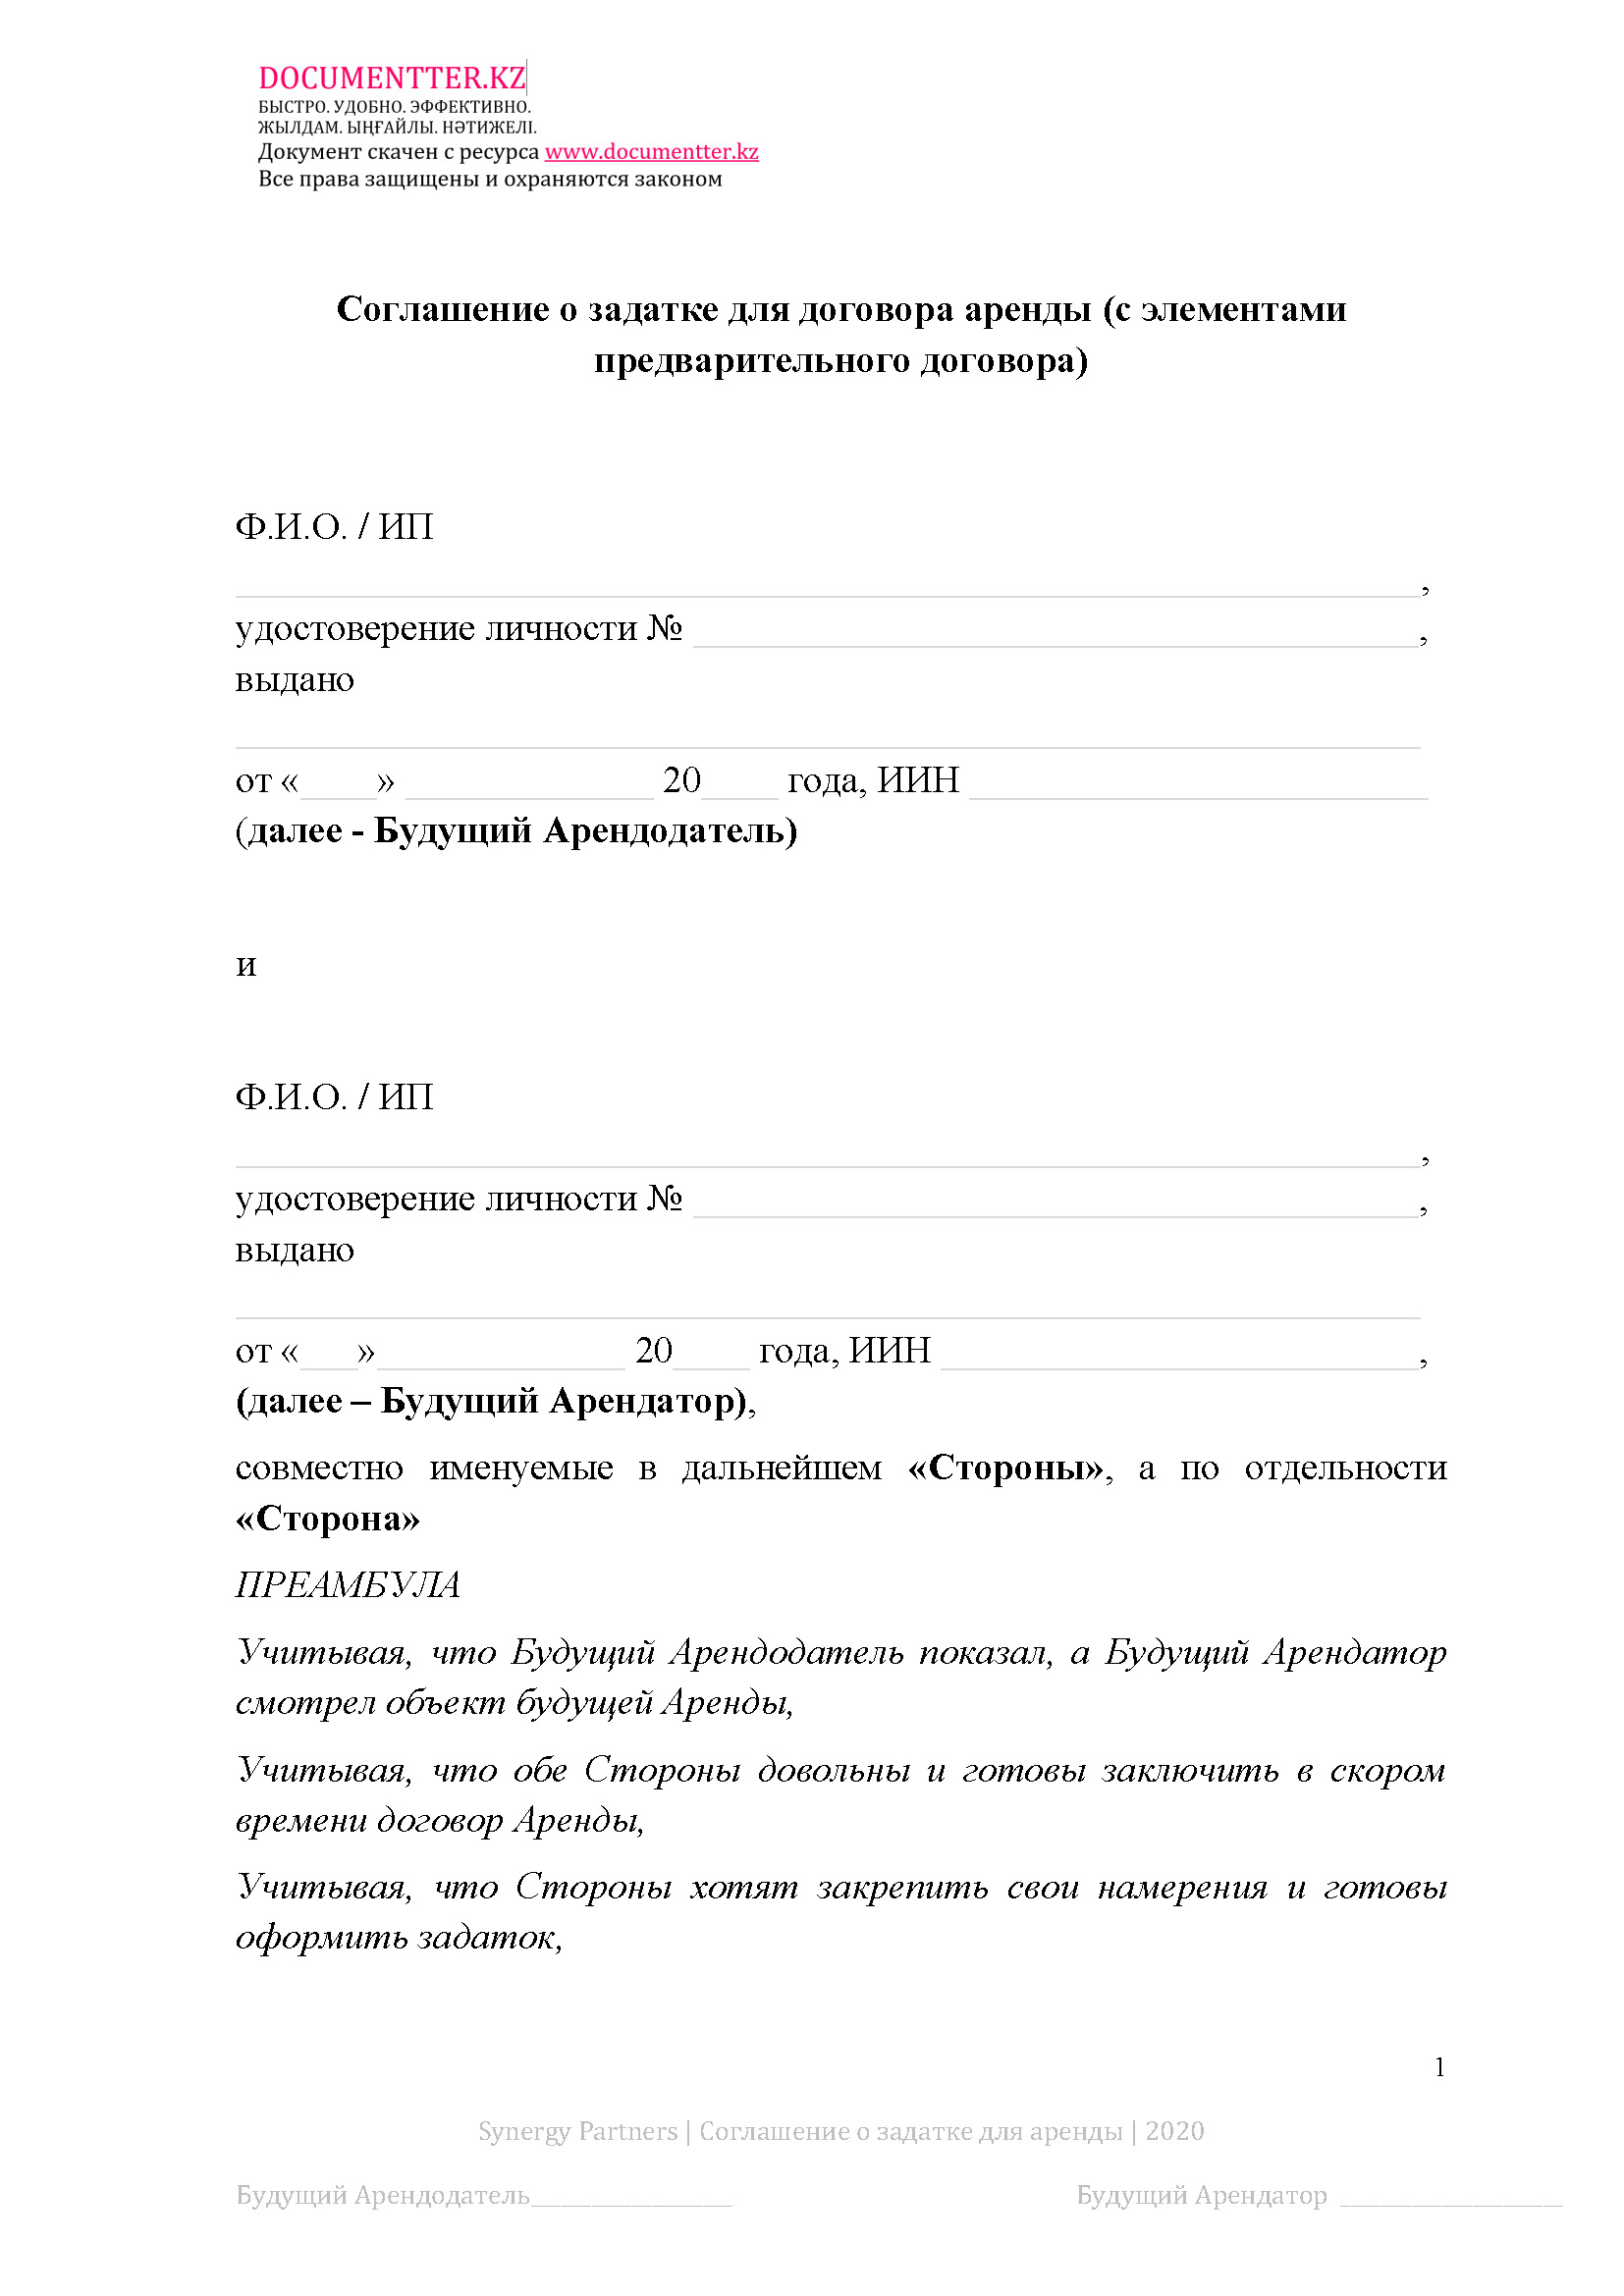 Соглашение о внесении задатка для аренды  | documentterkz.com в Казахстане